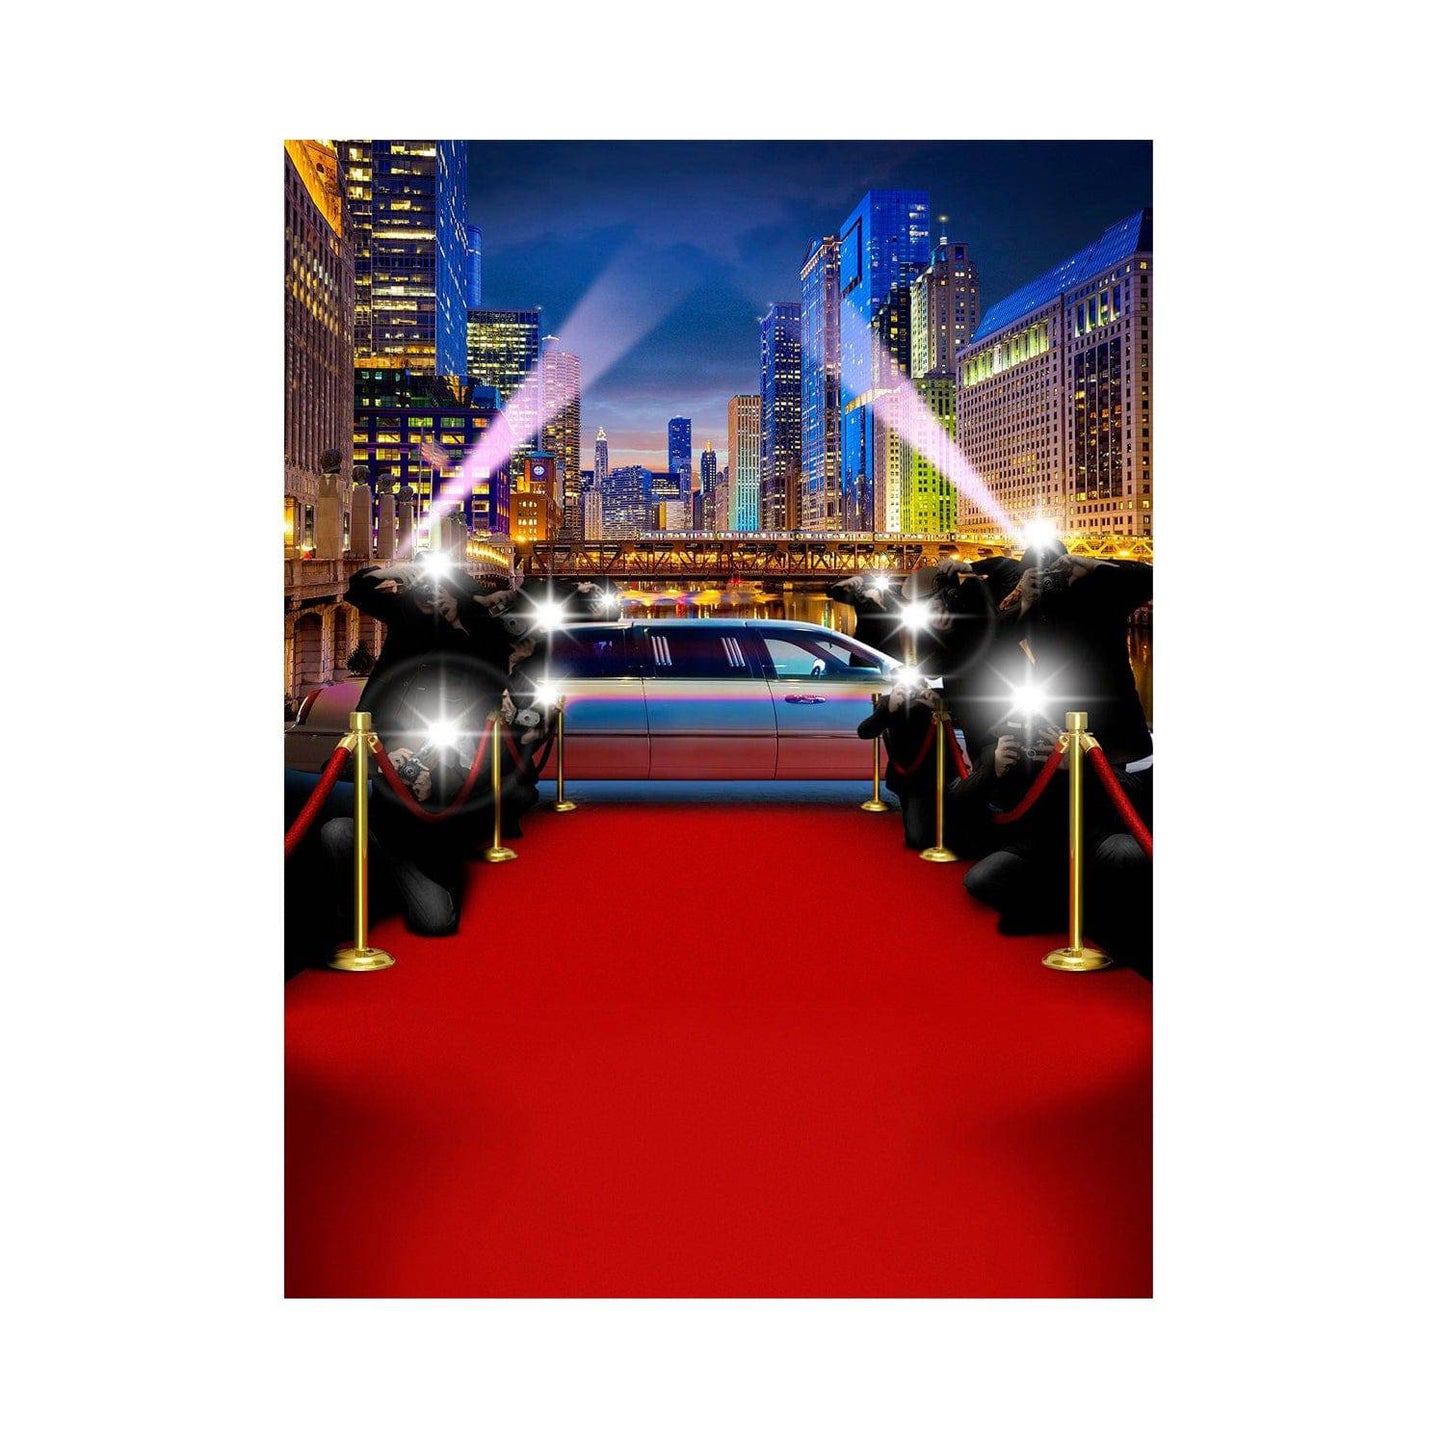 Chicago Red Carpet Paparazzi Photography Backdrop - Basic 5.5  x 6.5  